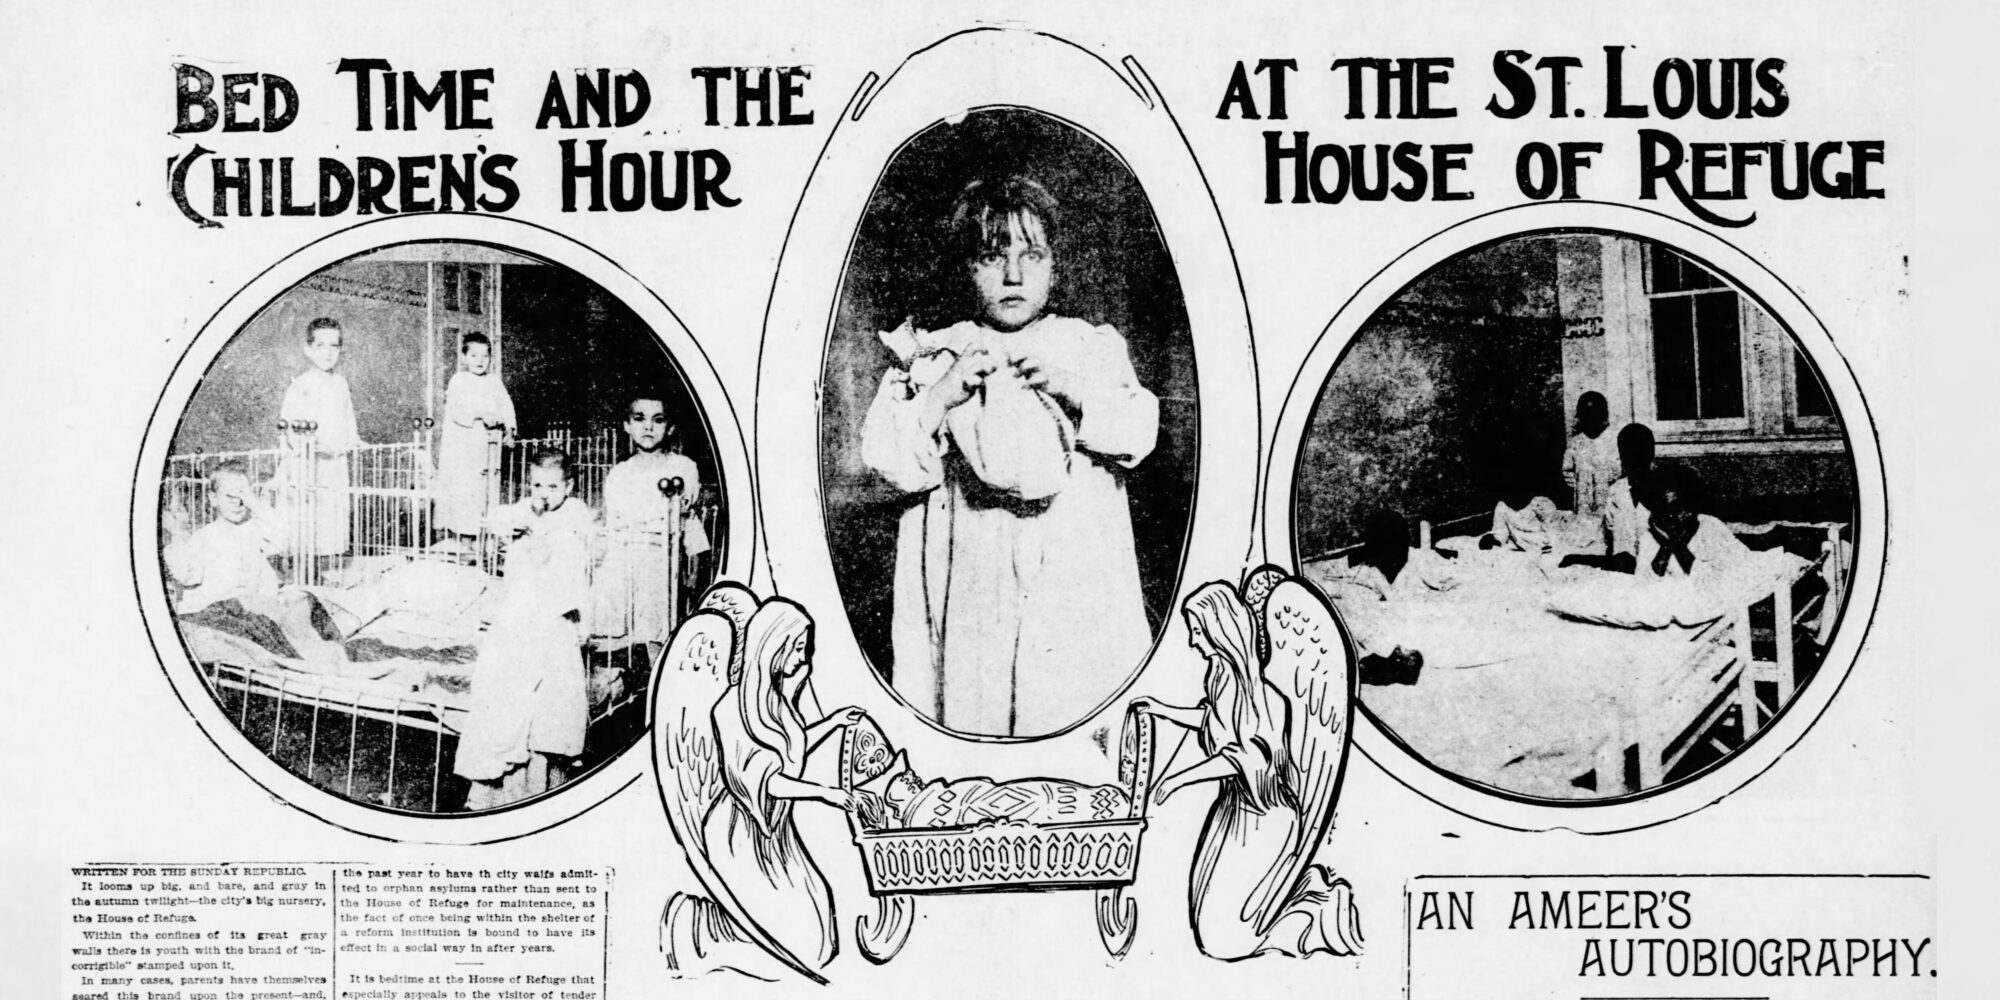 قصاصة من طبعة 3 نوفمبر 1901 من مجلة سانت لويس ريبابليك بعنوان "وقت النوم وساعة الأطفال في ملجأ سانت لويس". تحتوي الصورة على صور صغيرة لأطفال يرتدون قمصان نوم في الأسرة ورسمًا لملاكين يهزان سريرًا.